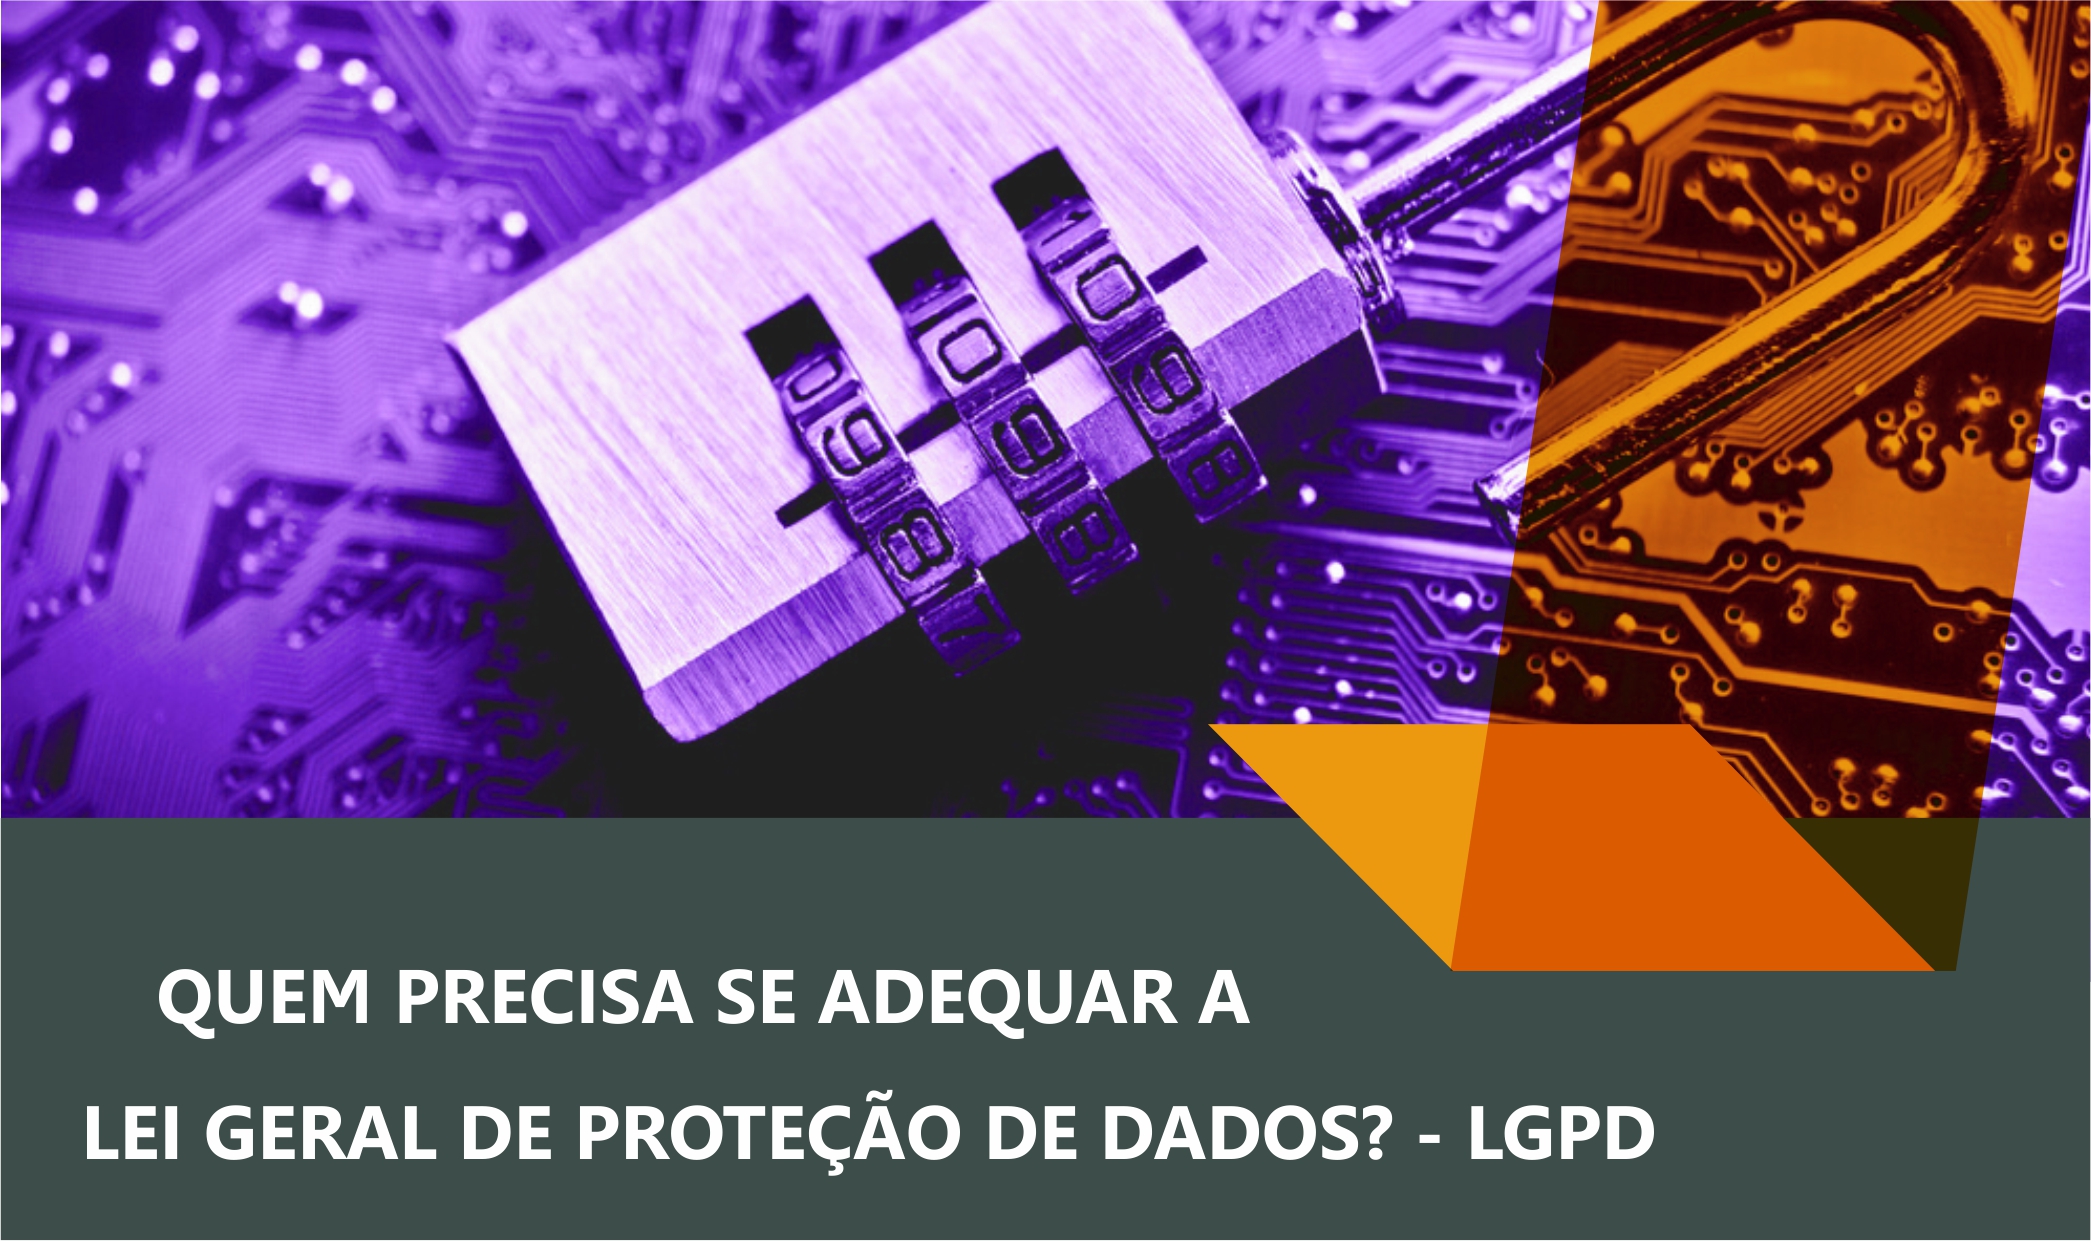 LGPD - Lei geral da proteção de dados